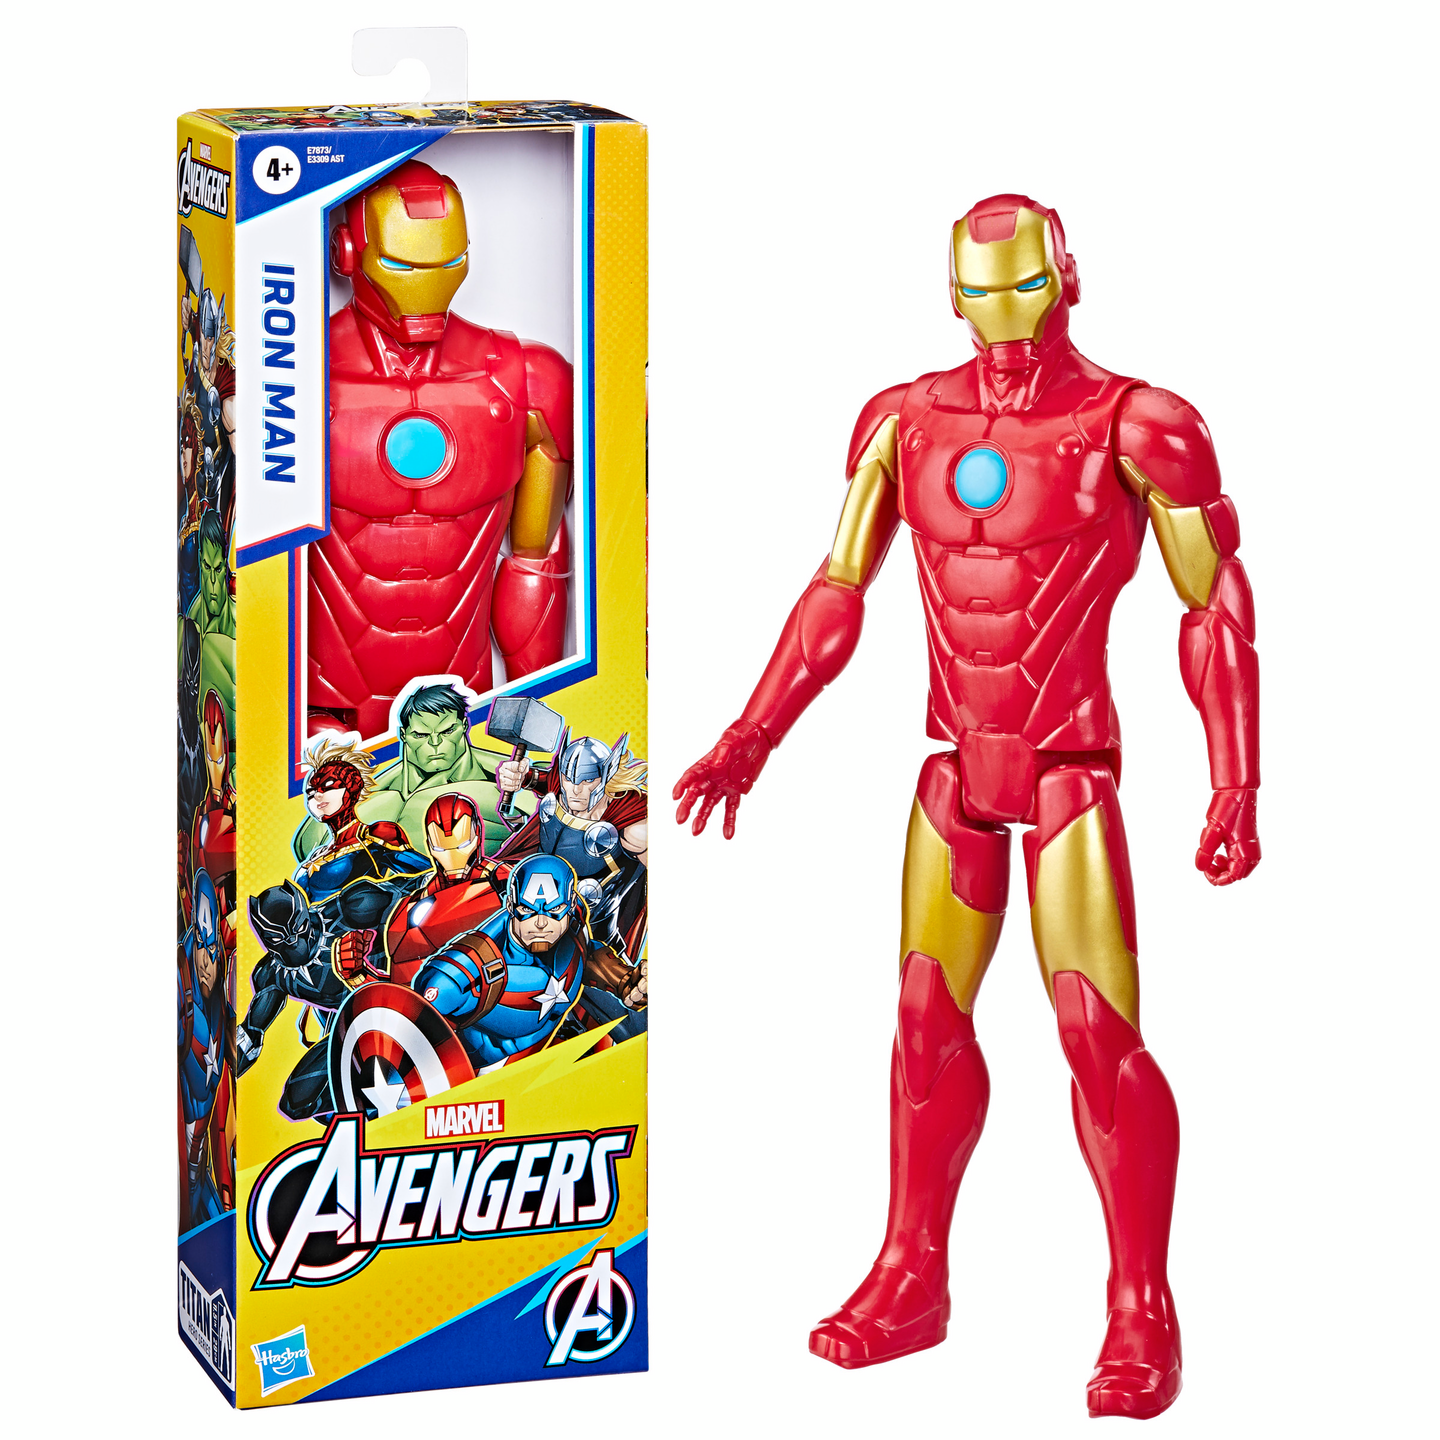 Marvel Avengers Iron Man 30cmMarvel Avengers Iron Man 30cm